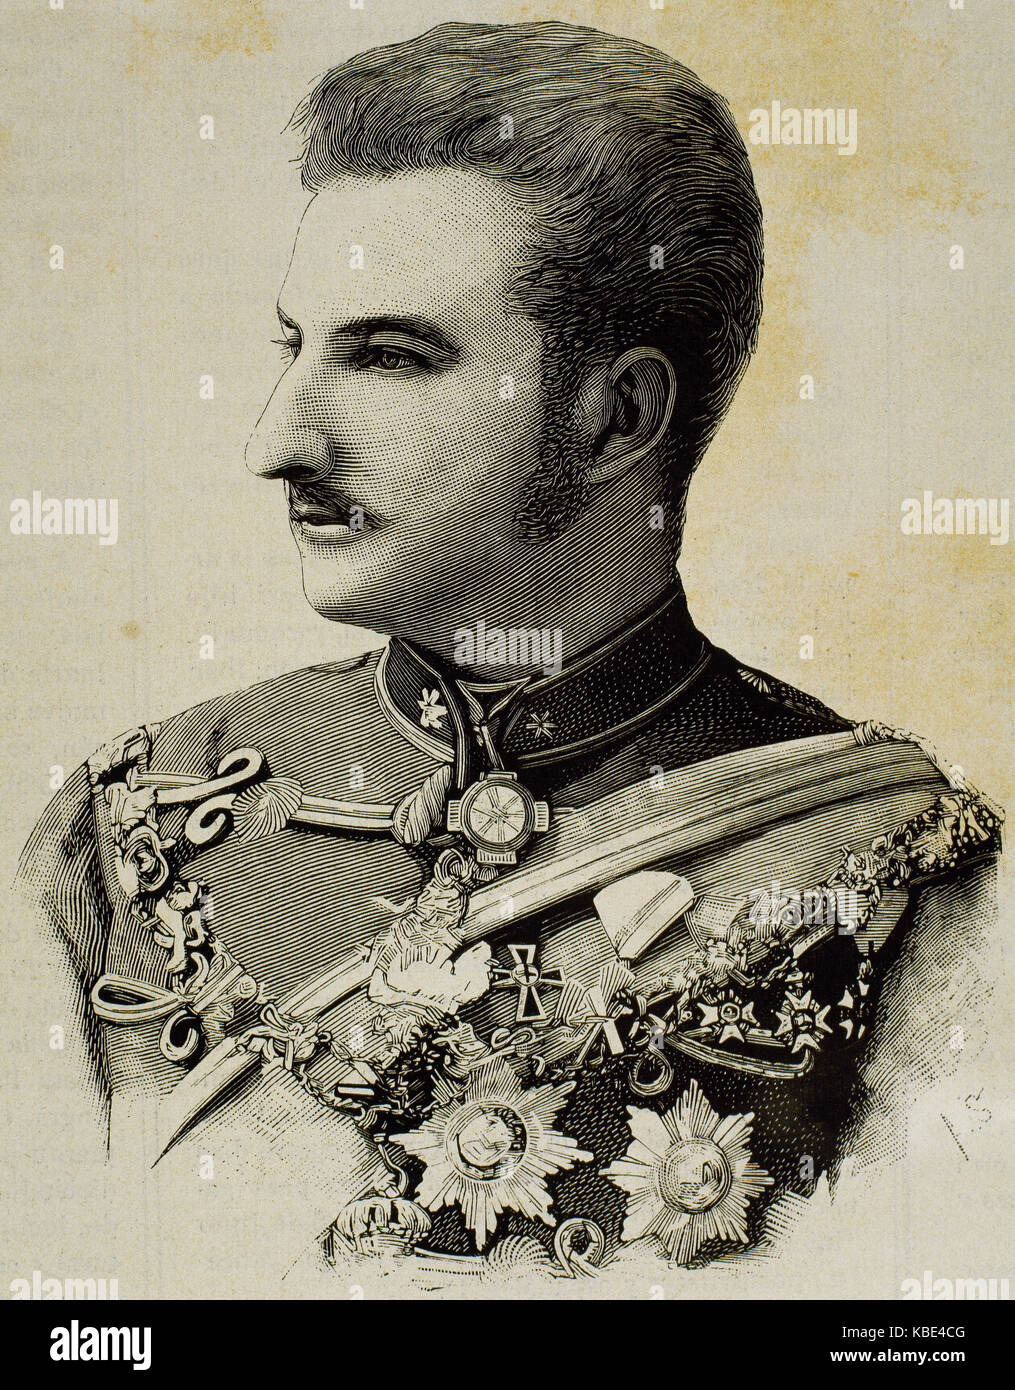 Ferdinand I. von Bulgarien (1861-1948). Zar von Bulgarien. Porträt. Gravur. Stockfoto